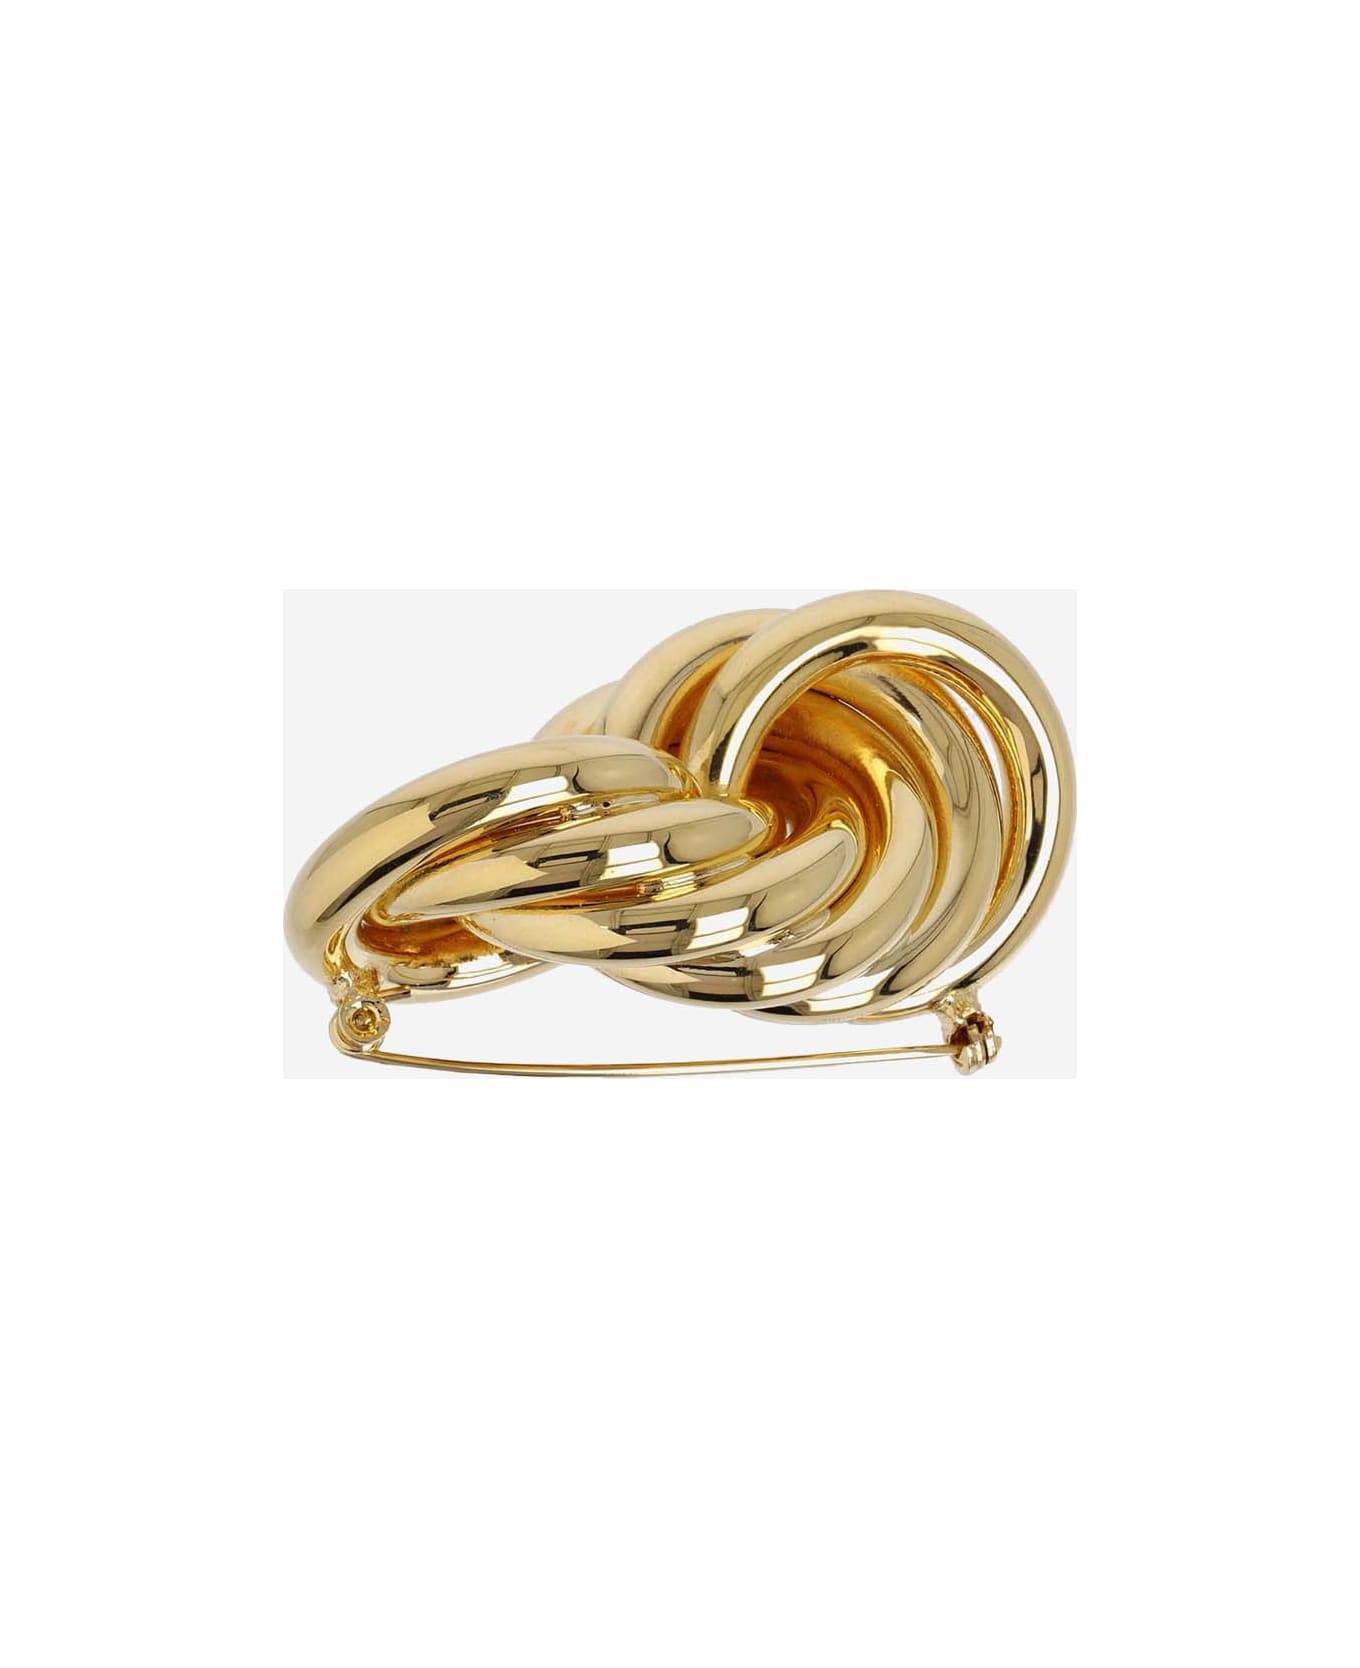 Jil Sander Brass Brooch Pin - Golden